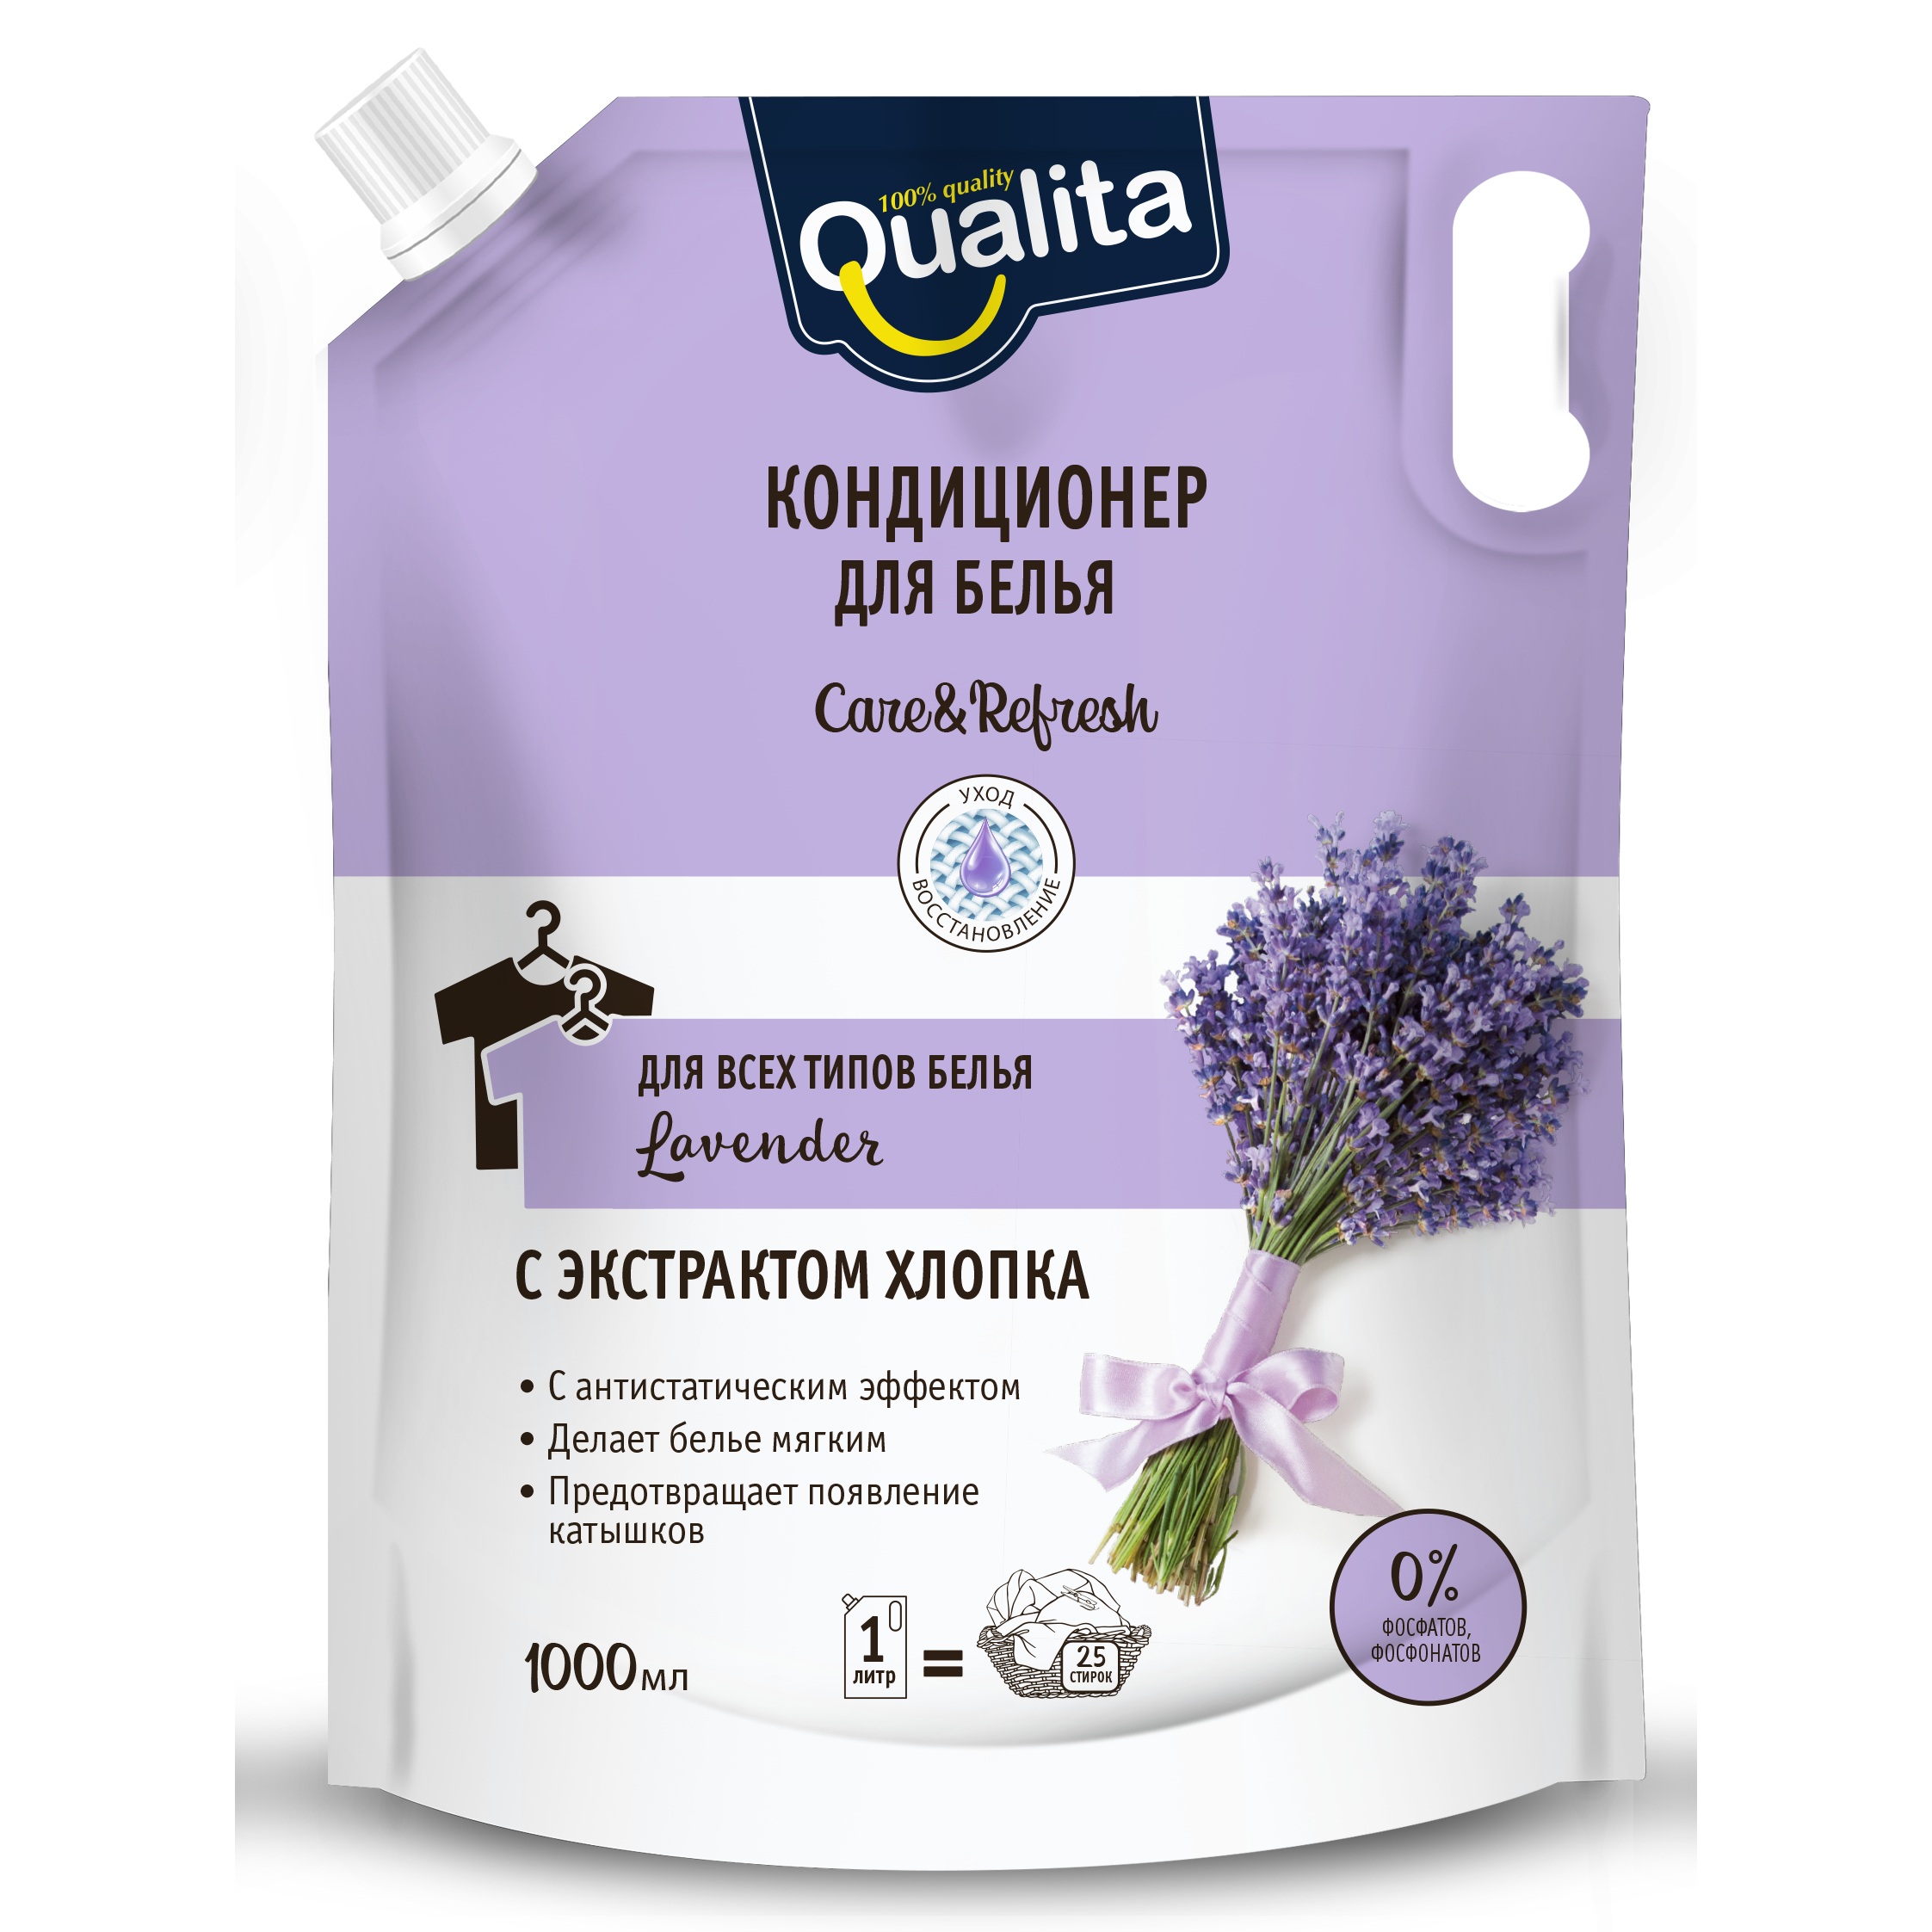 Кондиционер для белья Qualita Lavender с экстрактом хлопка для всех типов белья, дой-пак, 1 л кондиционер для белья qualita lavender с экстрактом хлопка для всех типов белья дой пак 1 л